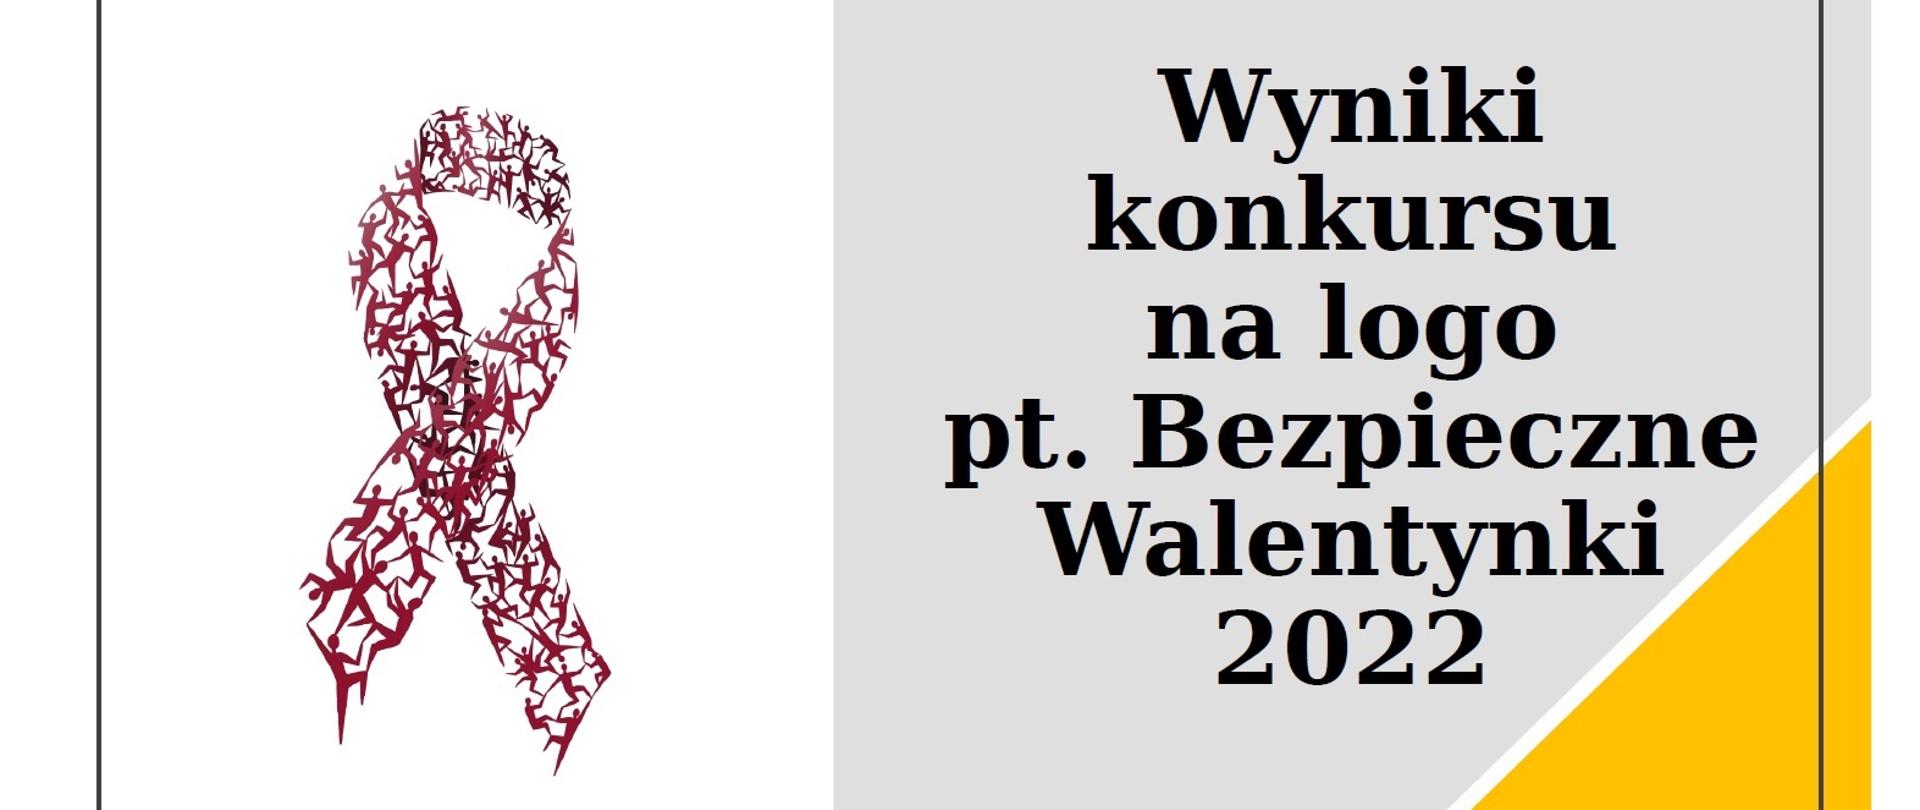 Wyniki konkursu na logo pt. Bezpieczne Walentynki 2022